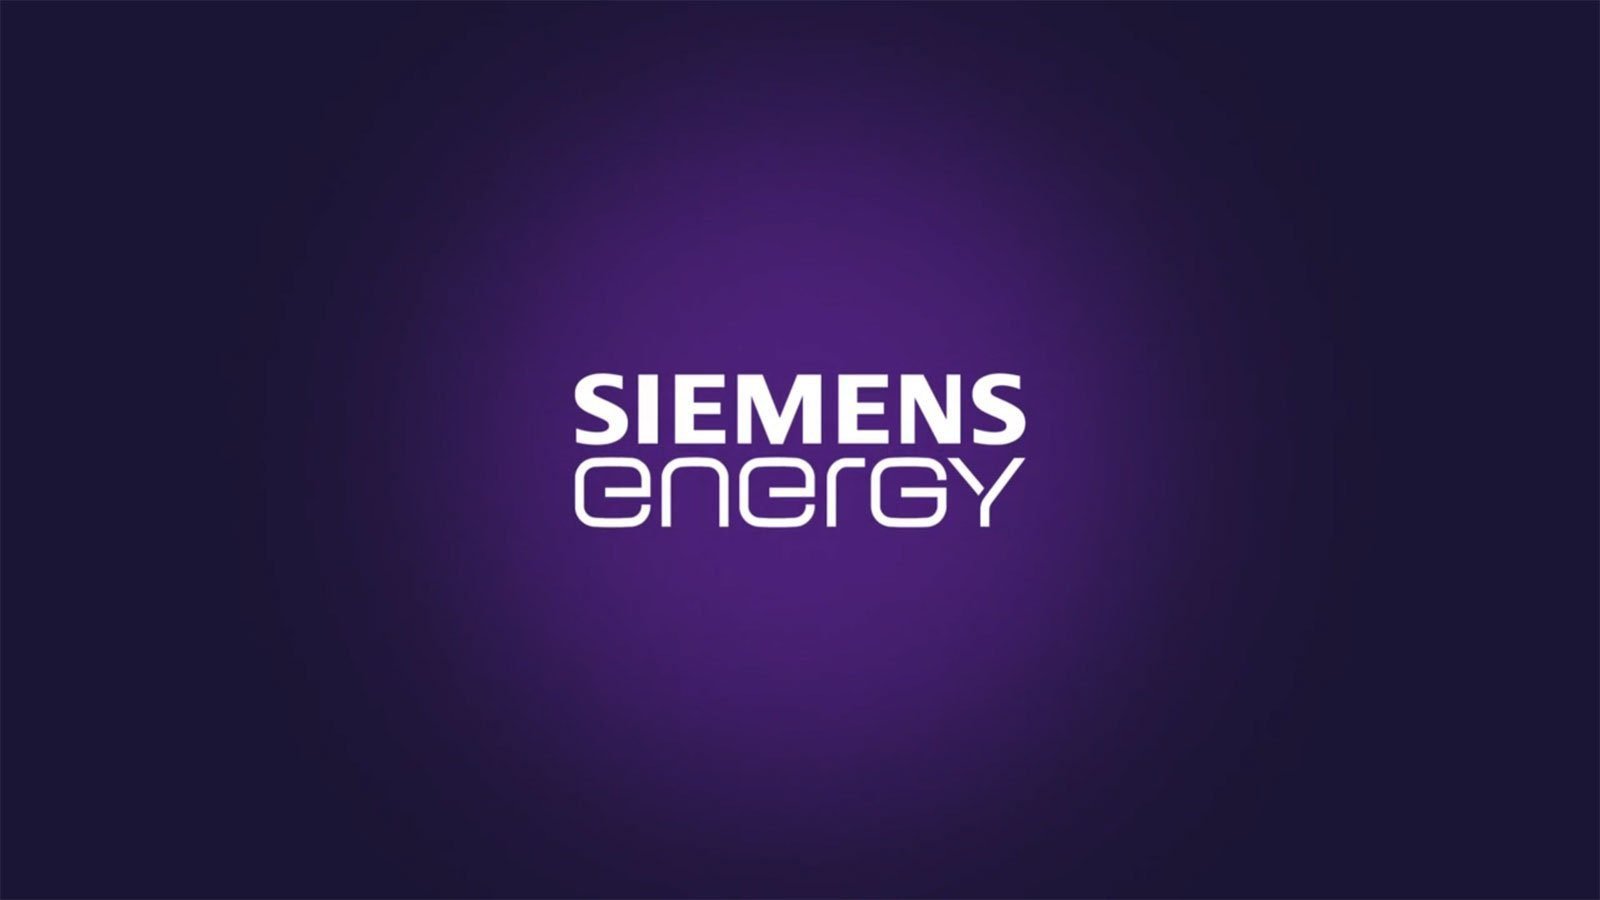 Siemens Energy confirms data breach after MOVEit data-theft attack – Source: www.bleepingcomputer.com